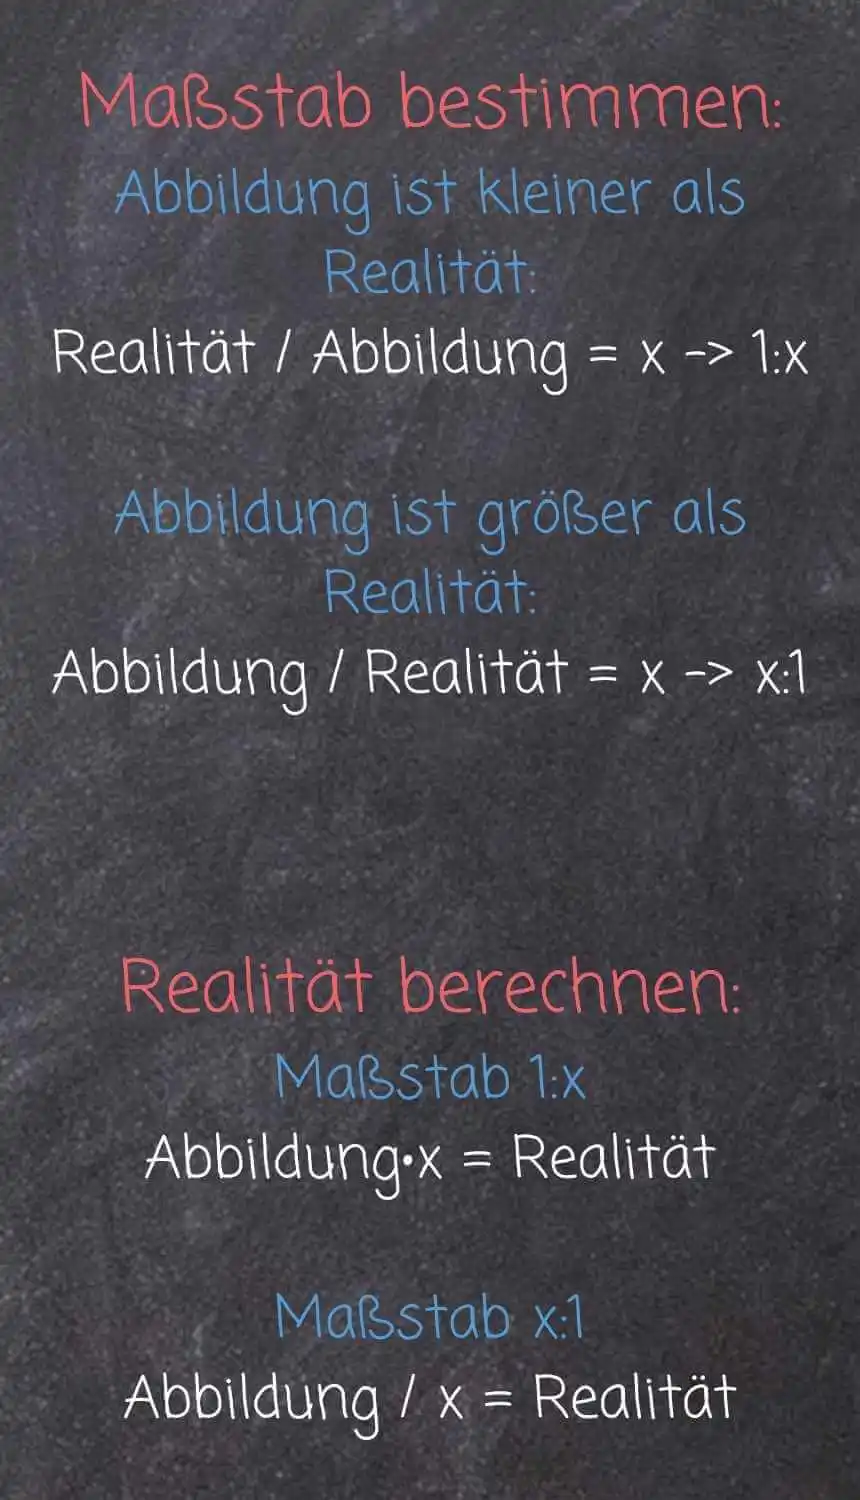 Maßstab bestimmen Abbildung ist kleiner als Realität: Realität/Abbildung 0 x -> 1:x Abbildung ist größer als Realität: Abbildung/Realität = x -> x:1 Realität berechnen: Maßstab 1:x - Abbildung mal x = Realität Maßstab x:1 - Abbildung / x = Realität